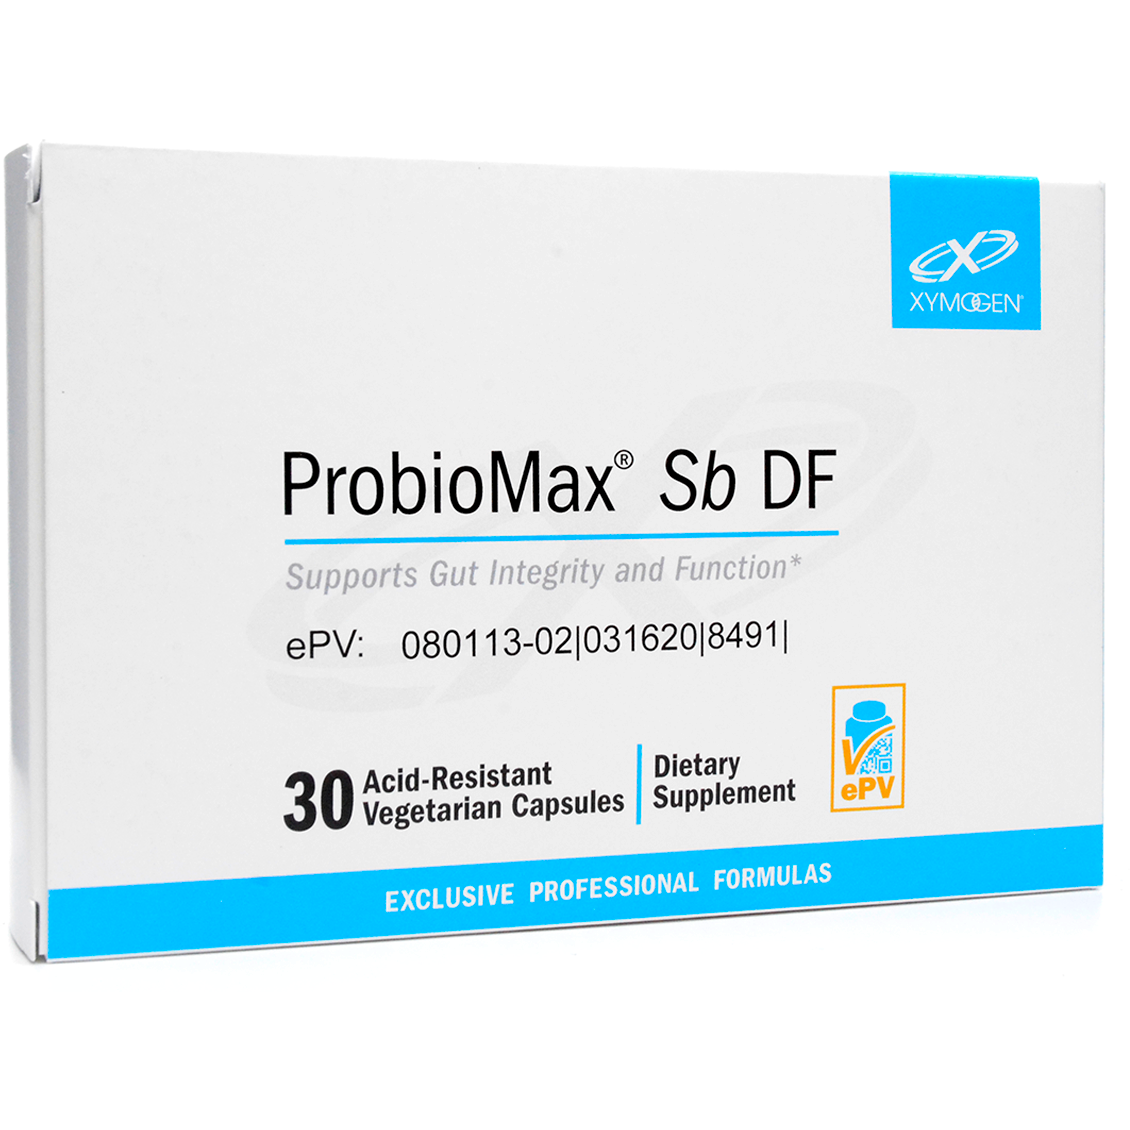 Xymogen ProbioMax Sb DF 30 Count